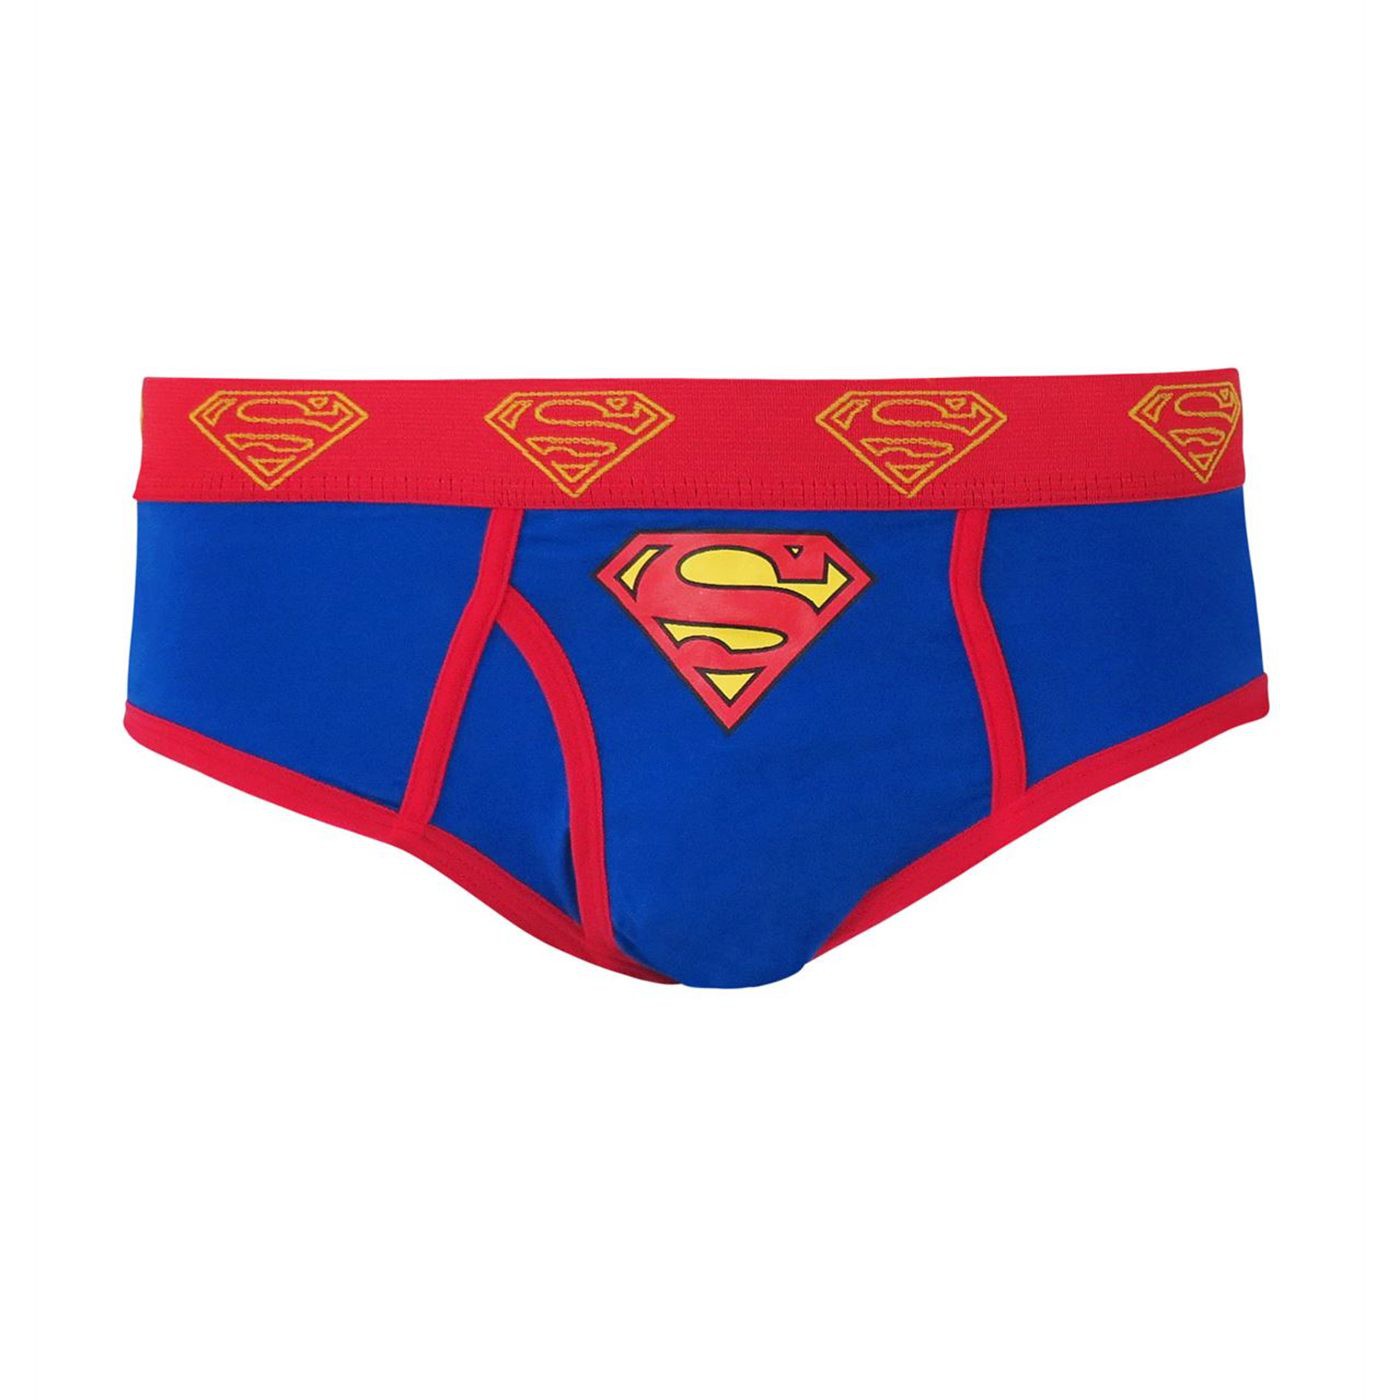 Superman Symbol Men's Underwear Fashion Briefs